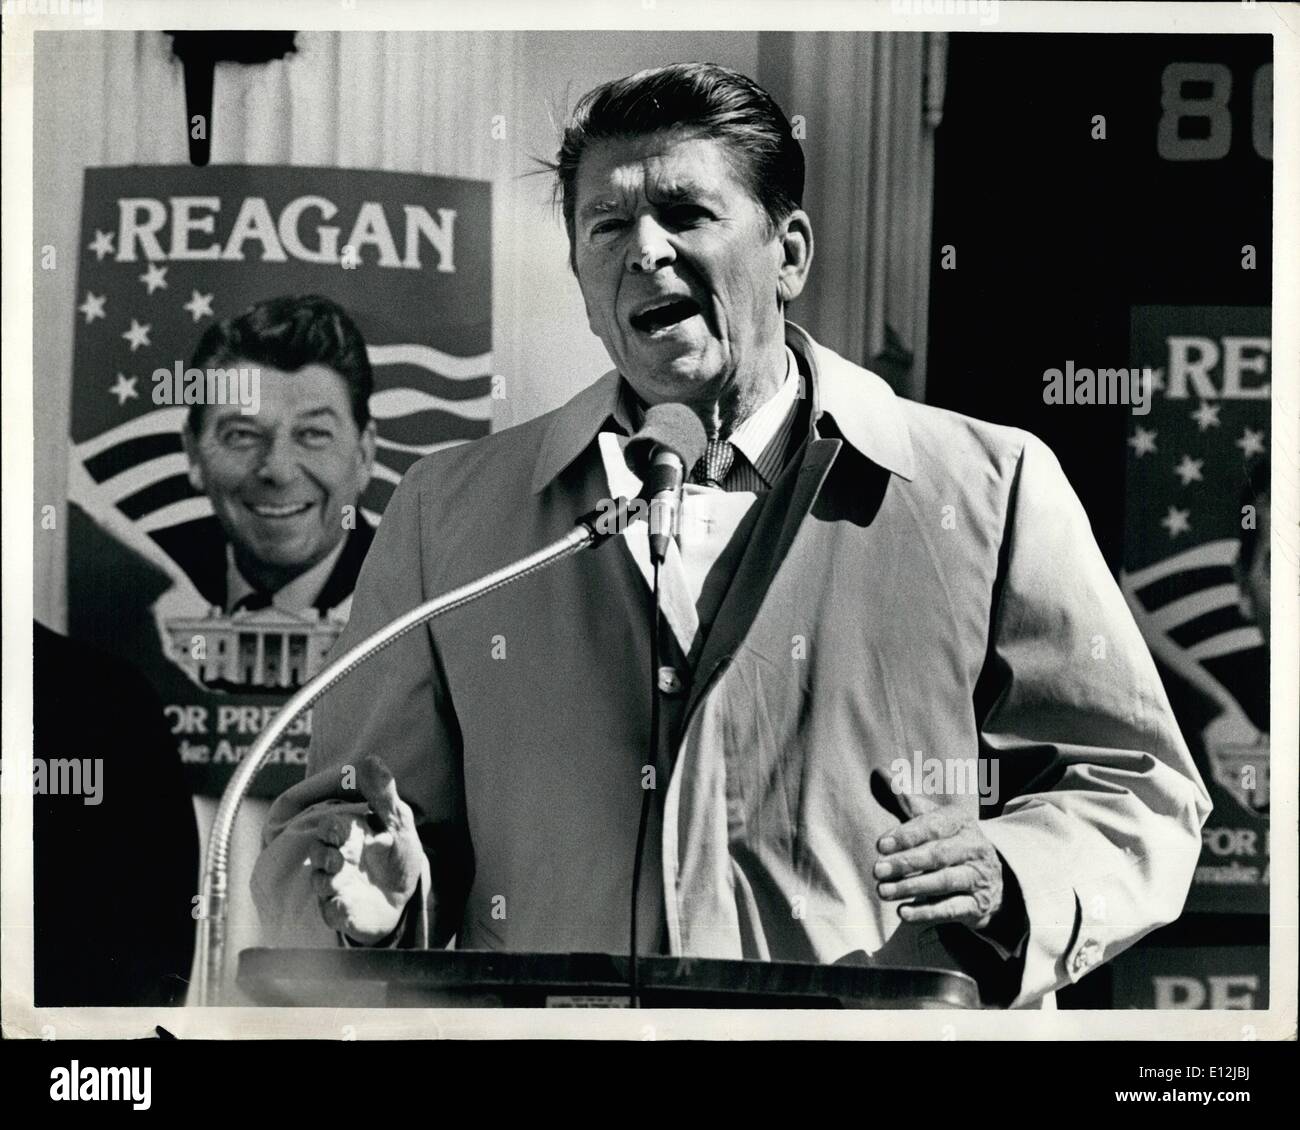 El 24 de febrero, 2012 - Ronald Reagan en su campaña presidencial. Foto de stock